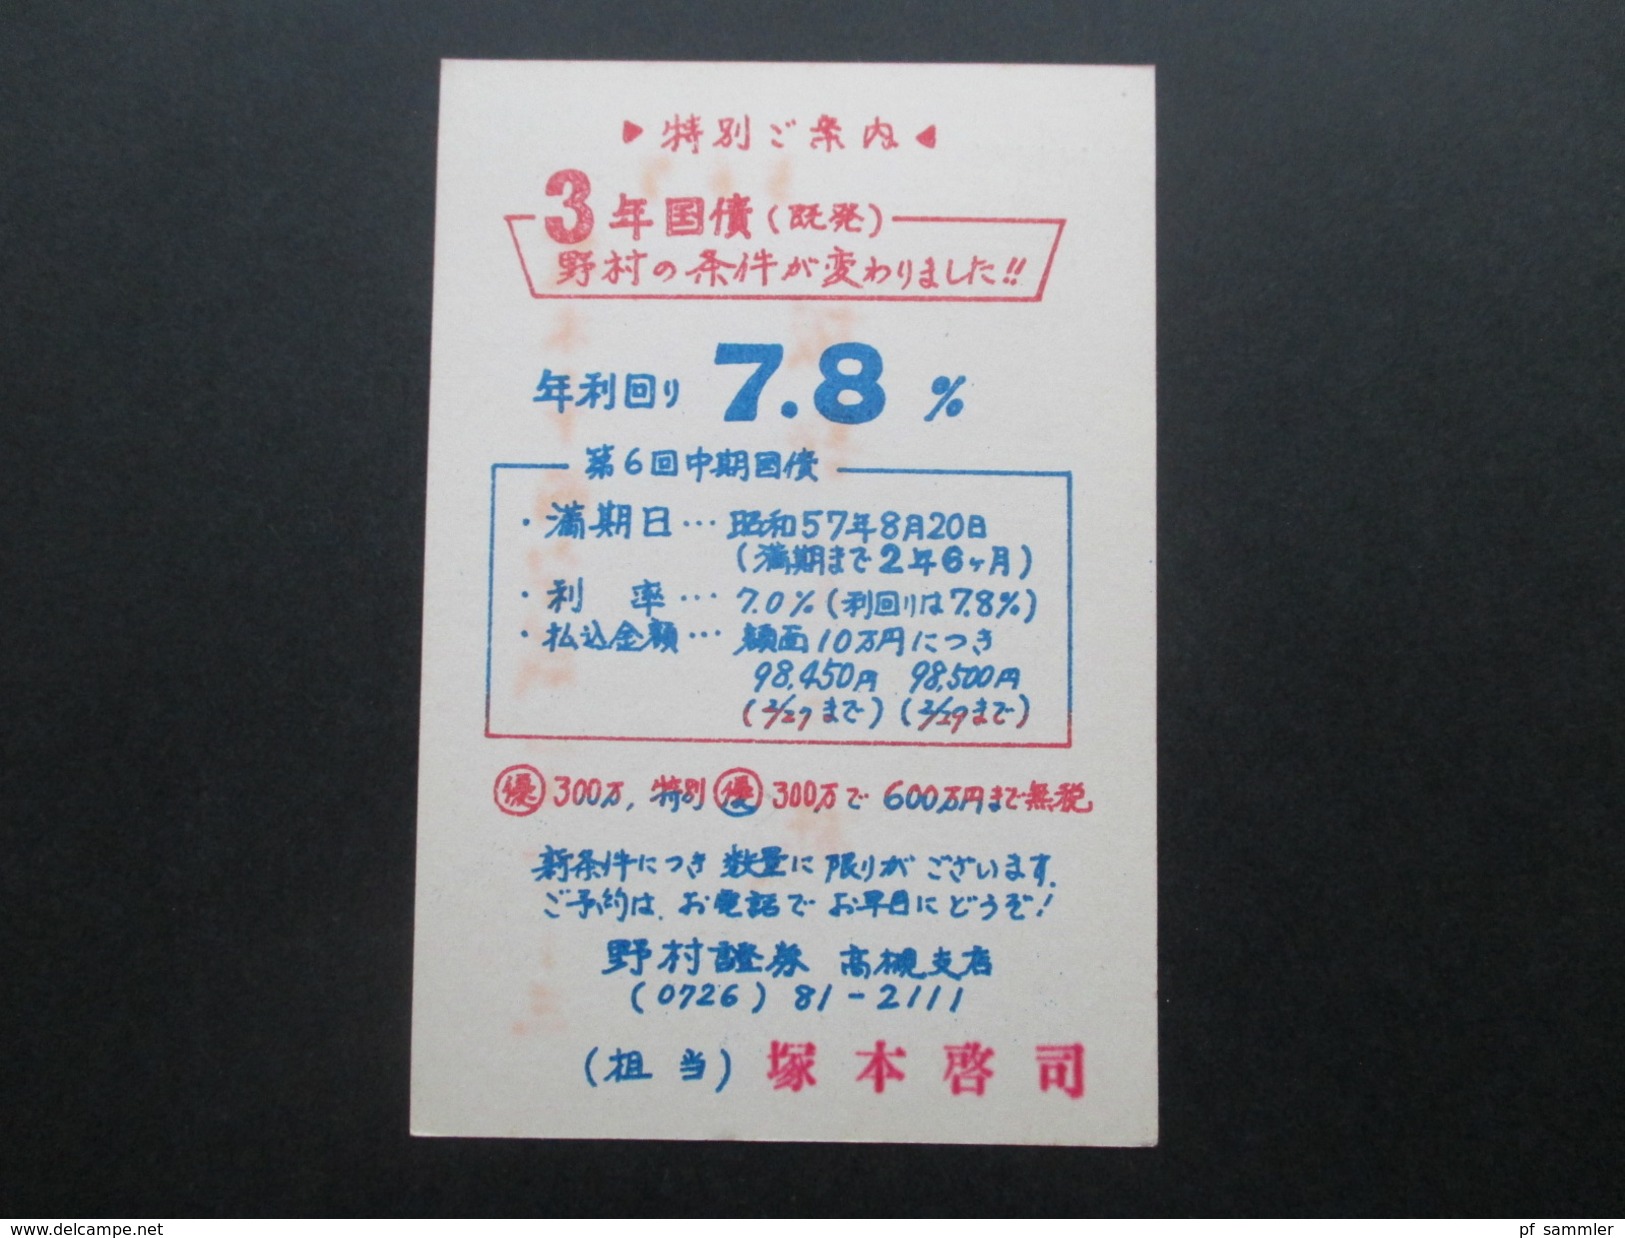 Asien / Japan 50 Ganzsachen / Bildkarten! Rote Sonderstempel / ungebraucht! Fundgrube! Viele Motive!